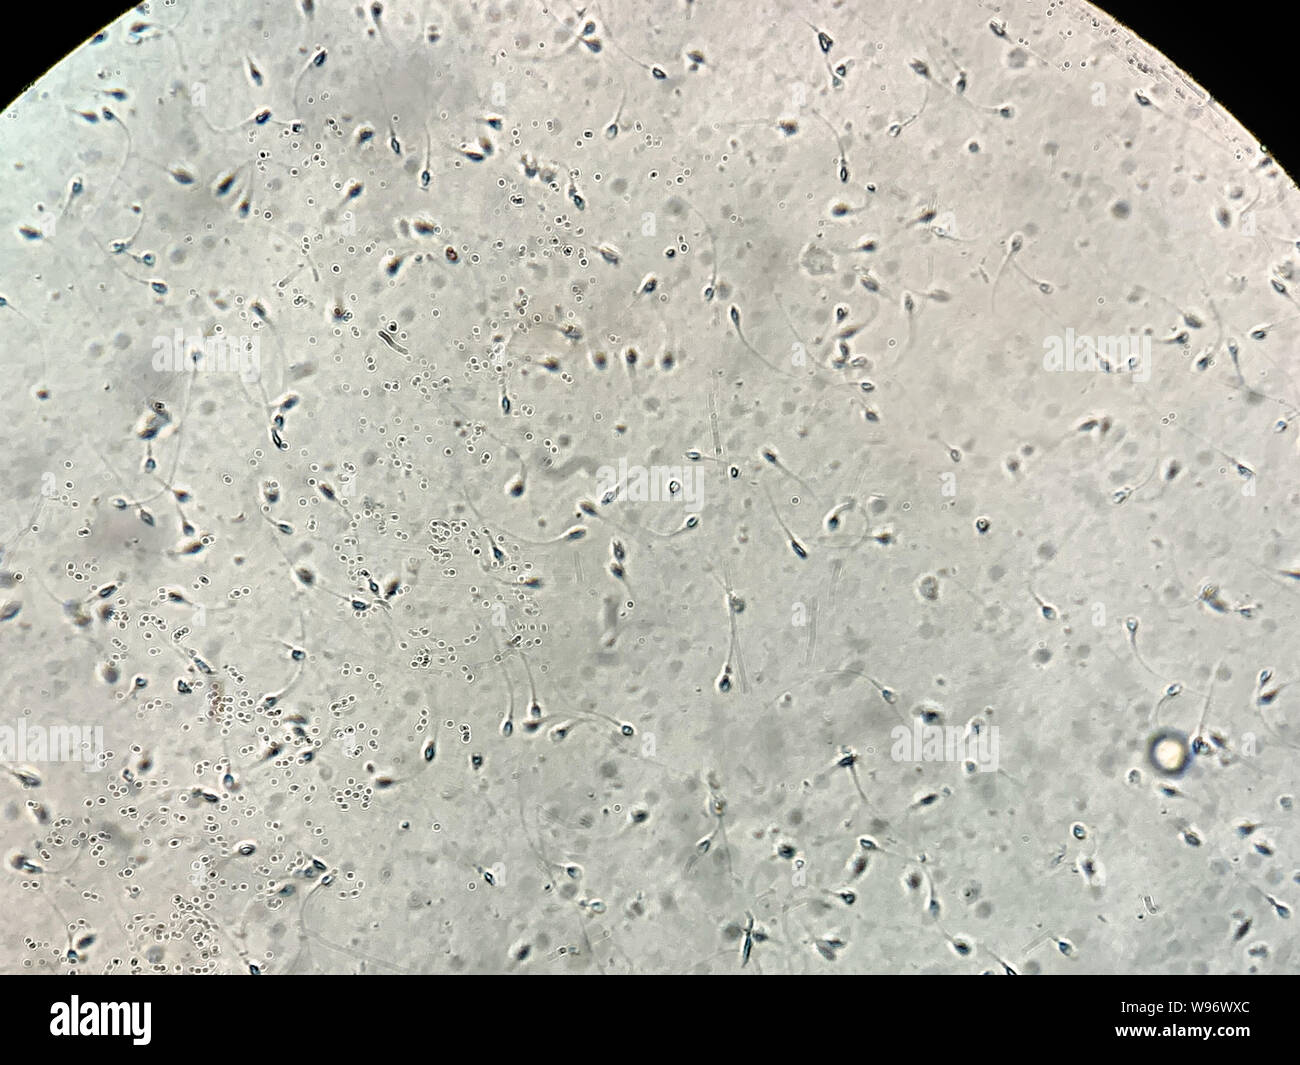 Blick auf menschliche Spermien im Labor unter dem Mikroskop Stockfotografie  - Alamy